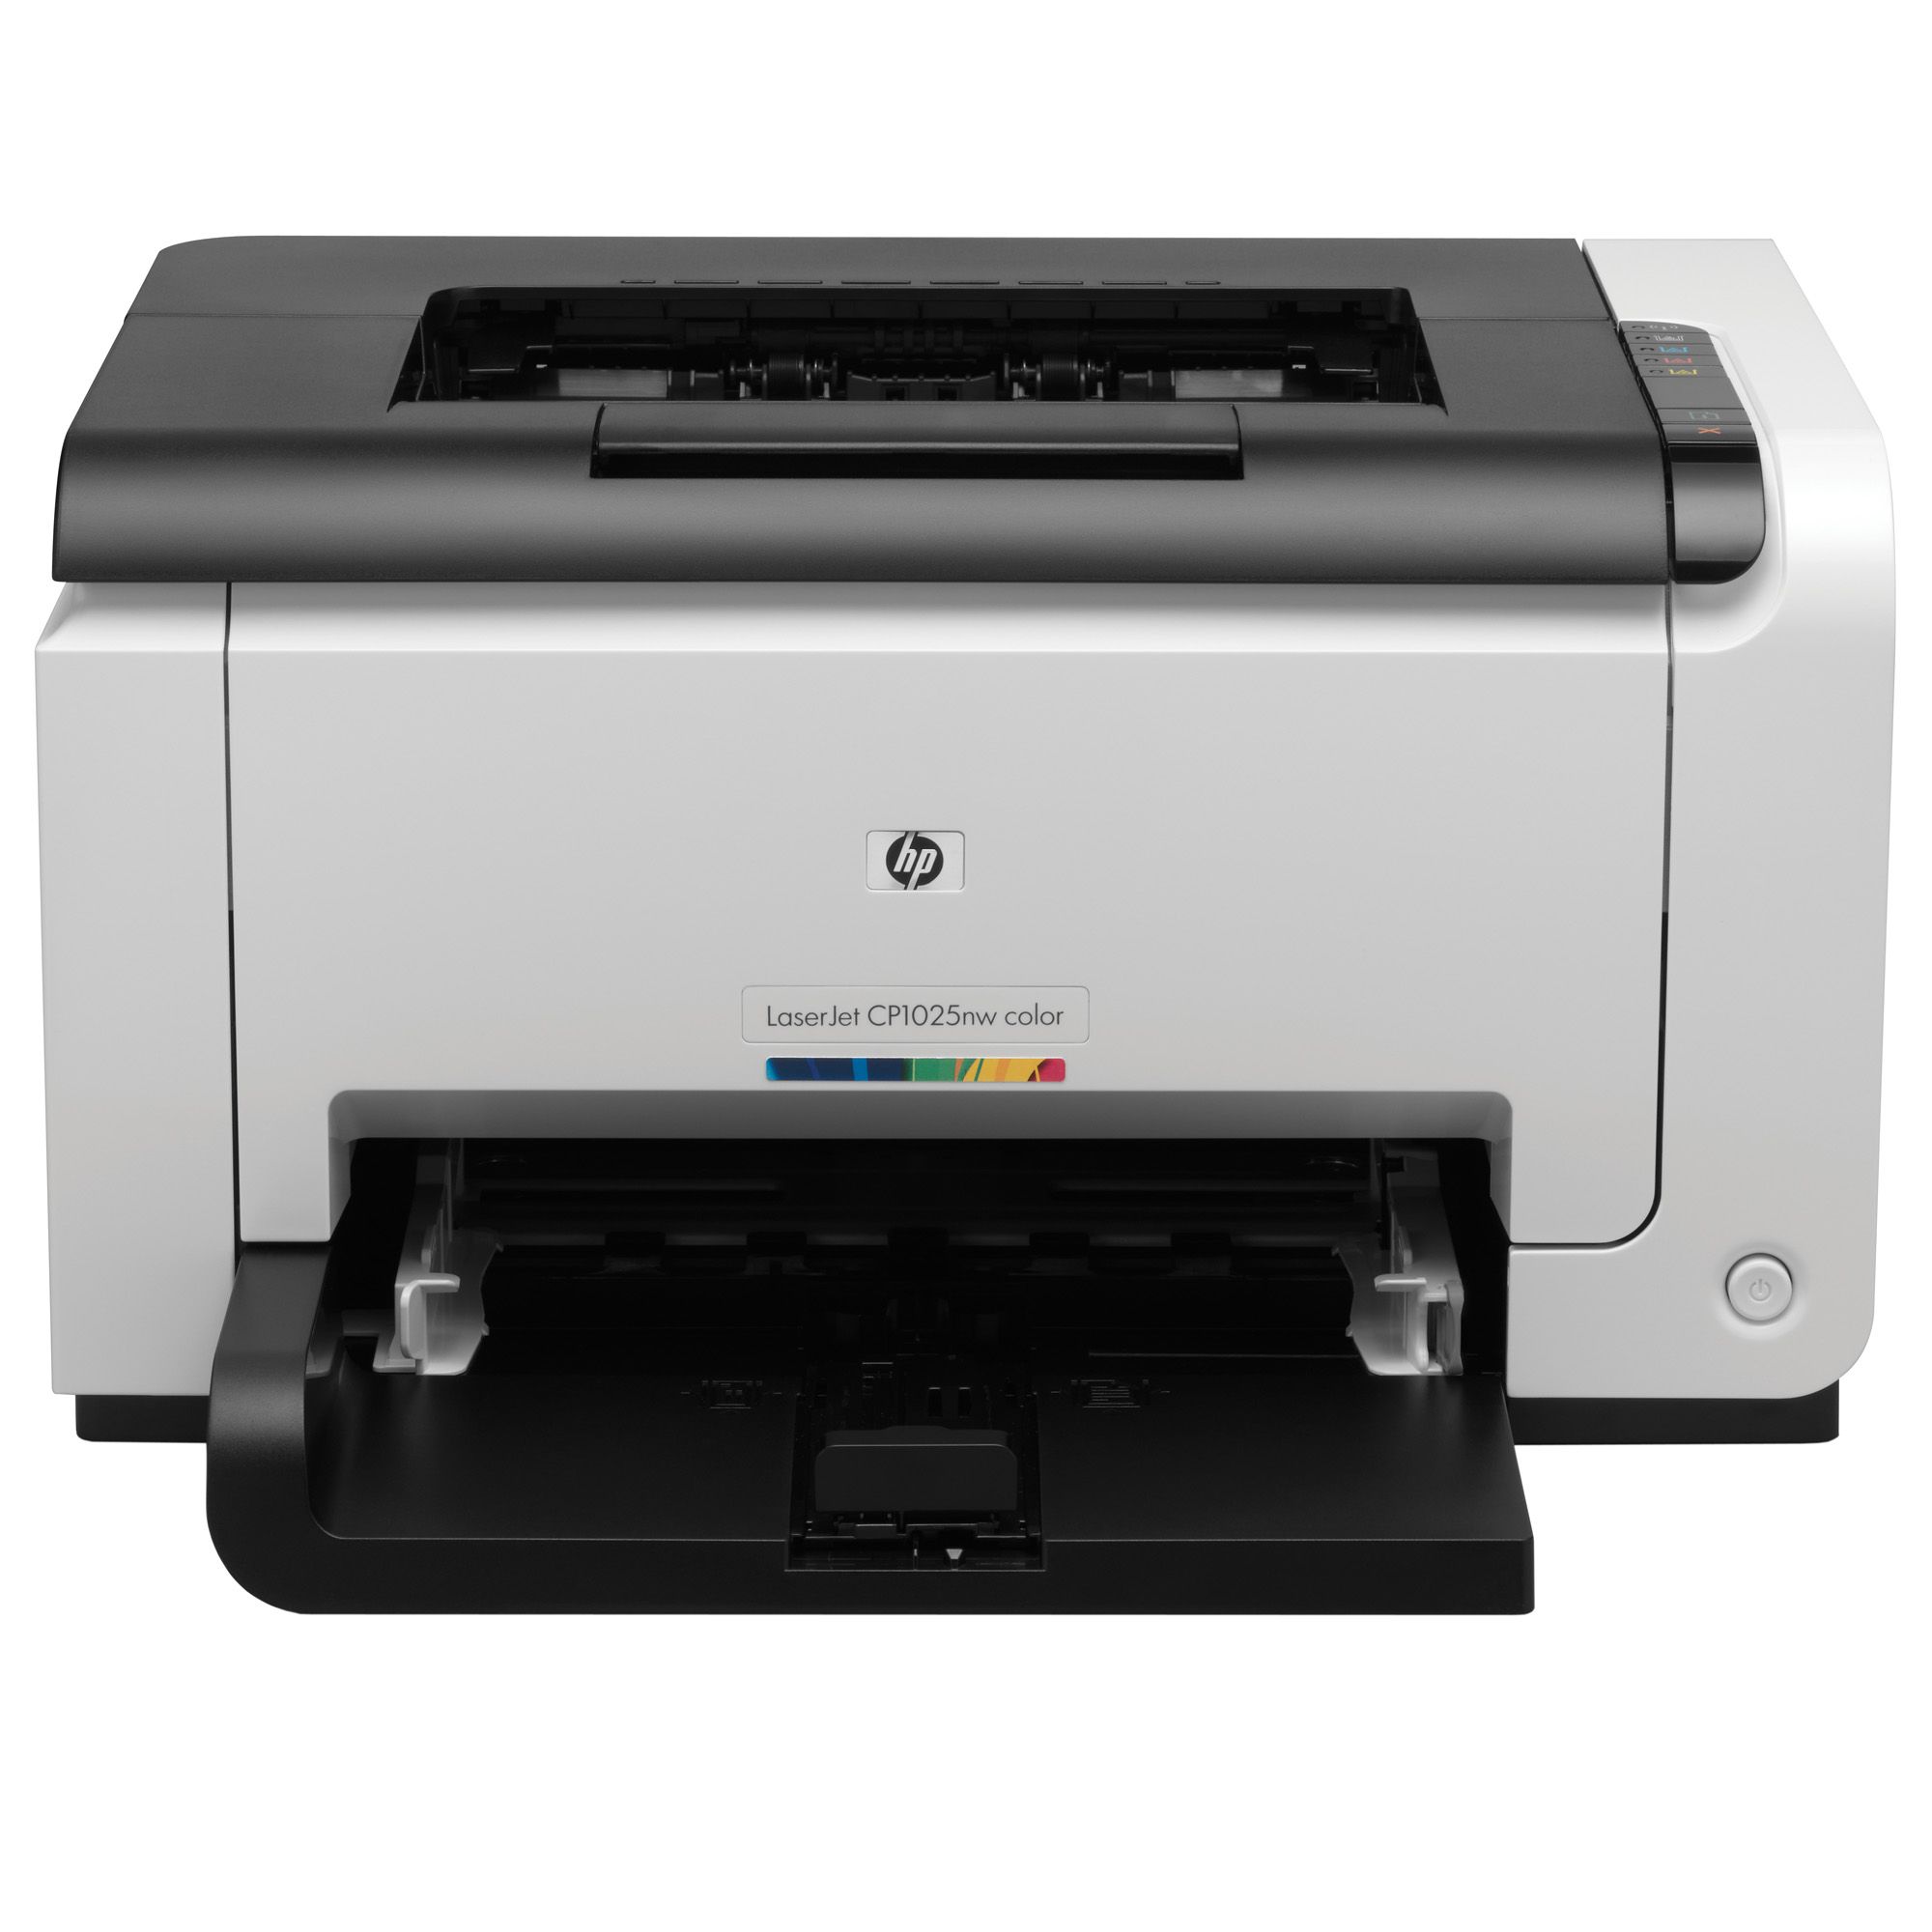  Imprimanta HP Color LaserJet Pro CP1025nw, A4 